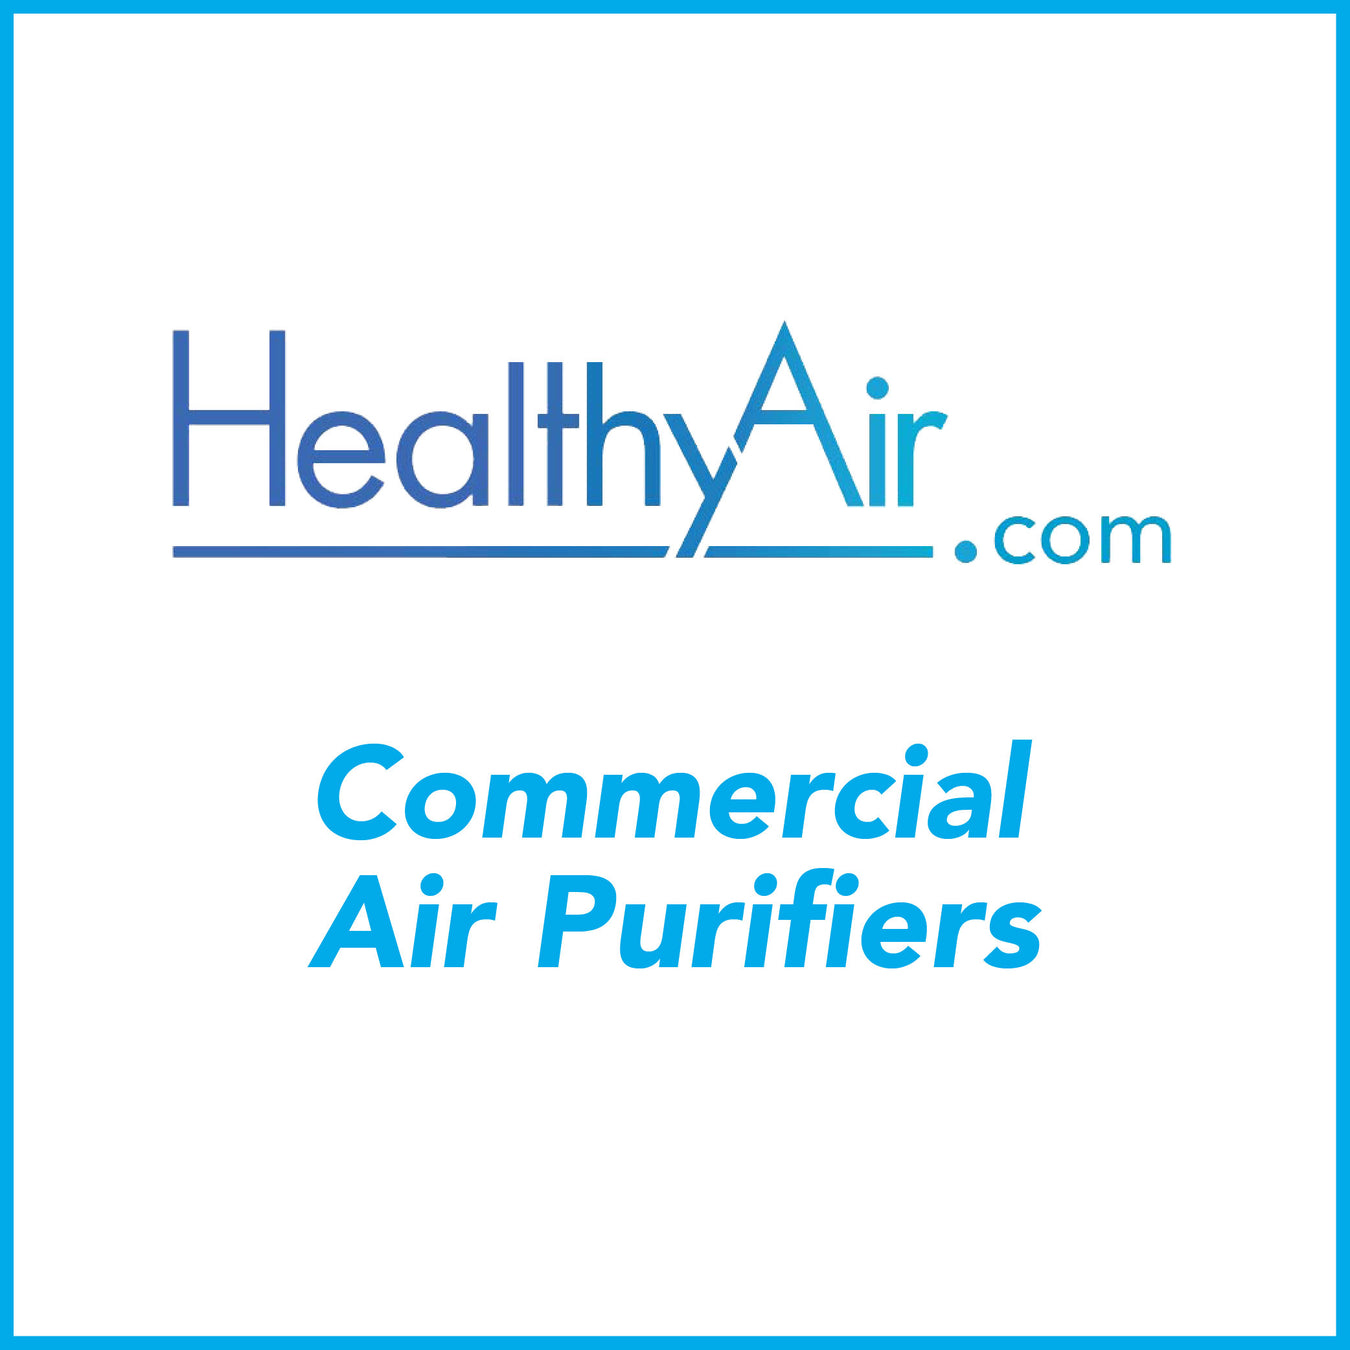 General Air Purifiers - Healthy Air Inc.